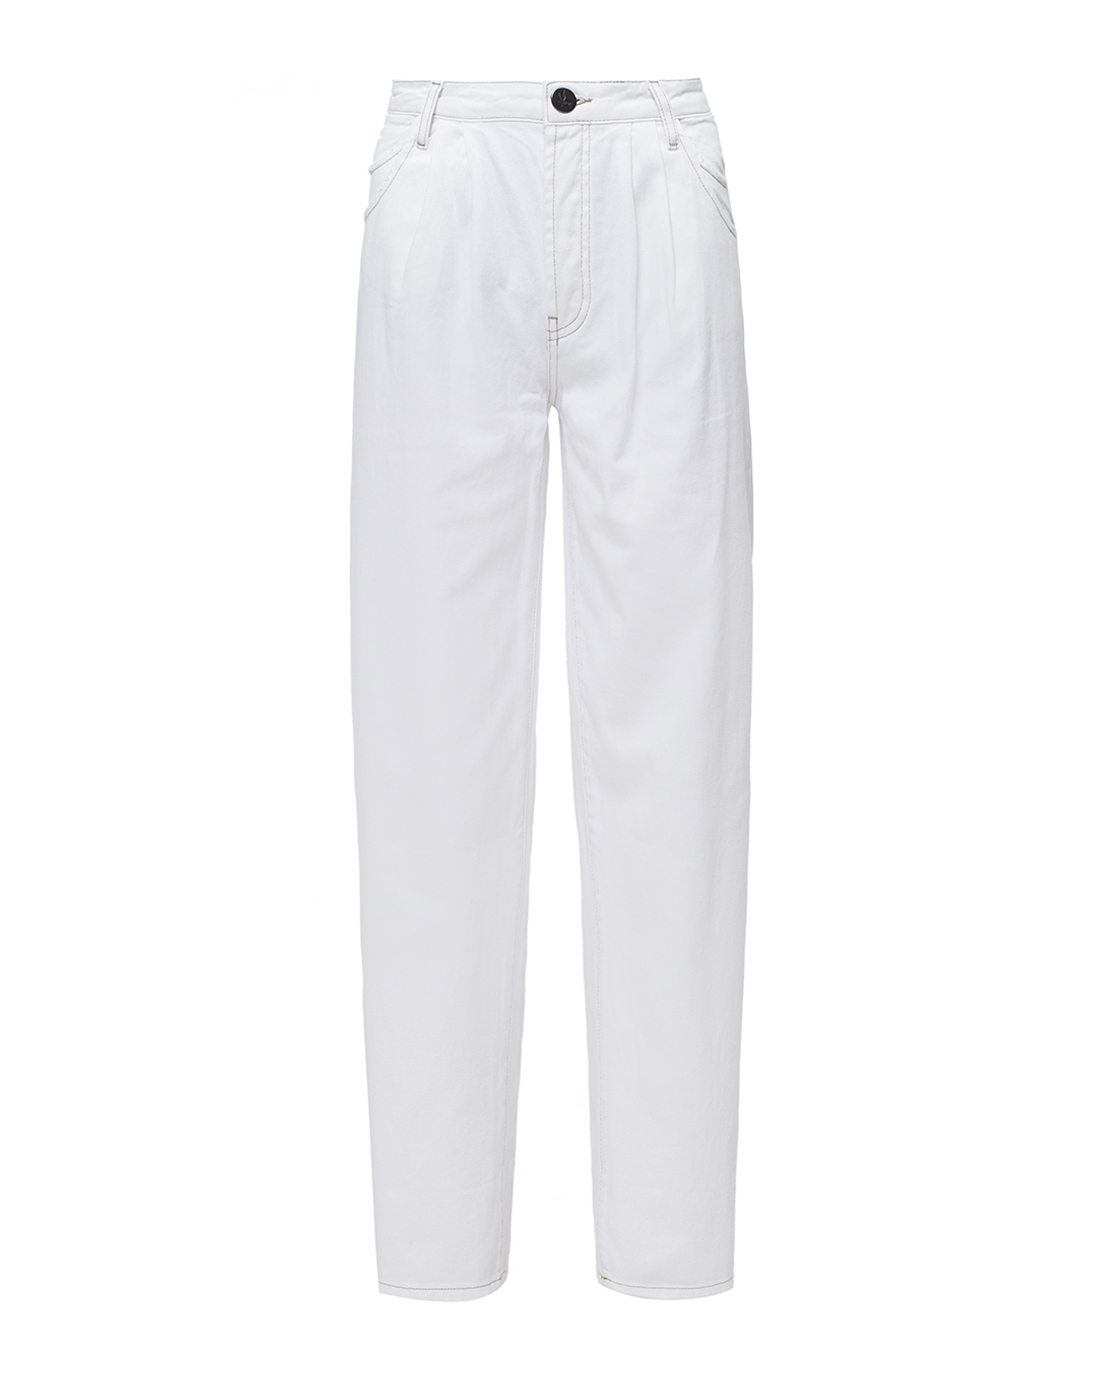 Женские белые джинсы Oneteaspoon S23786-1